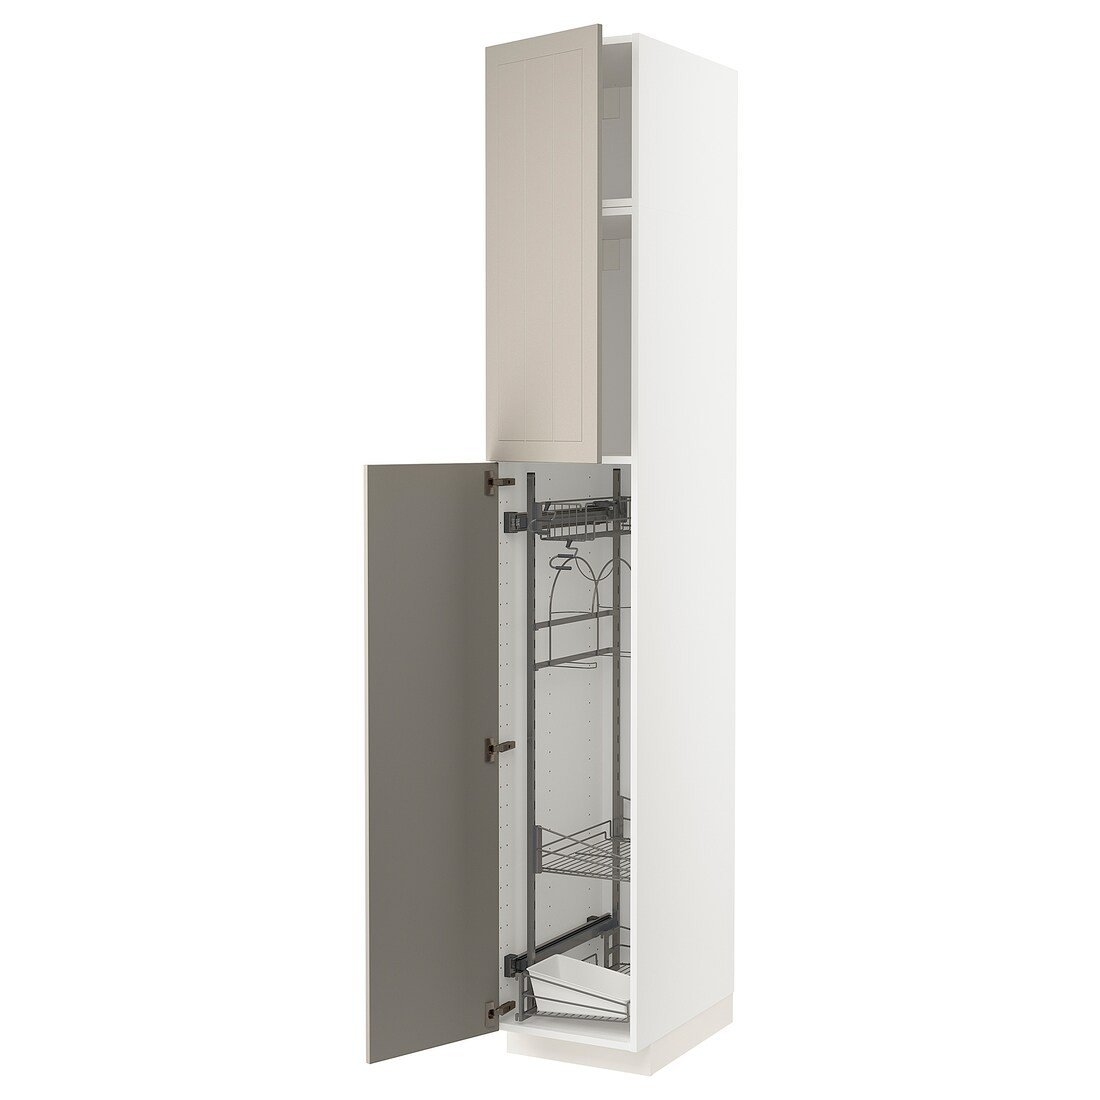 METOD МЕТОД Высокий шкаф с отделением для аксессуаров для уборки, белый / Stensund бежевый, 40x60x240 см